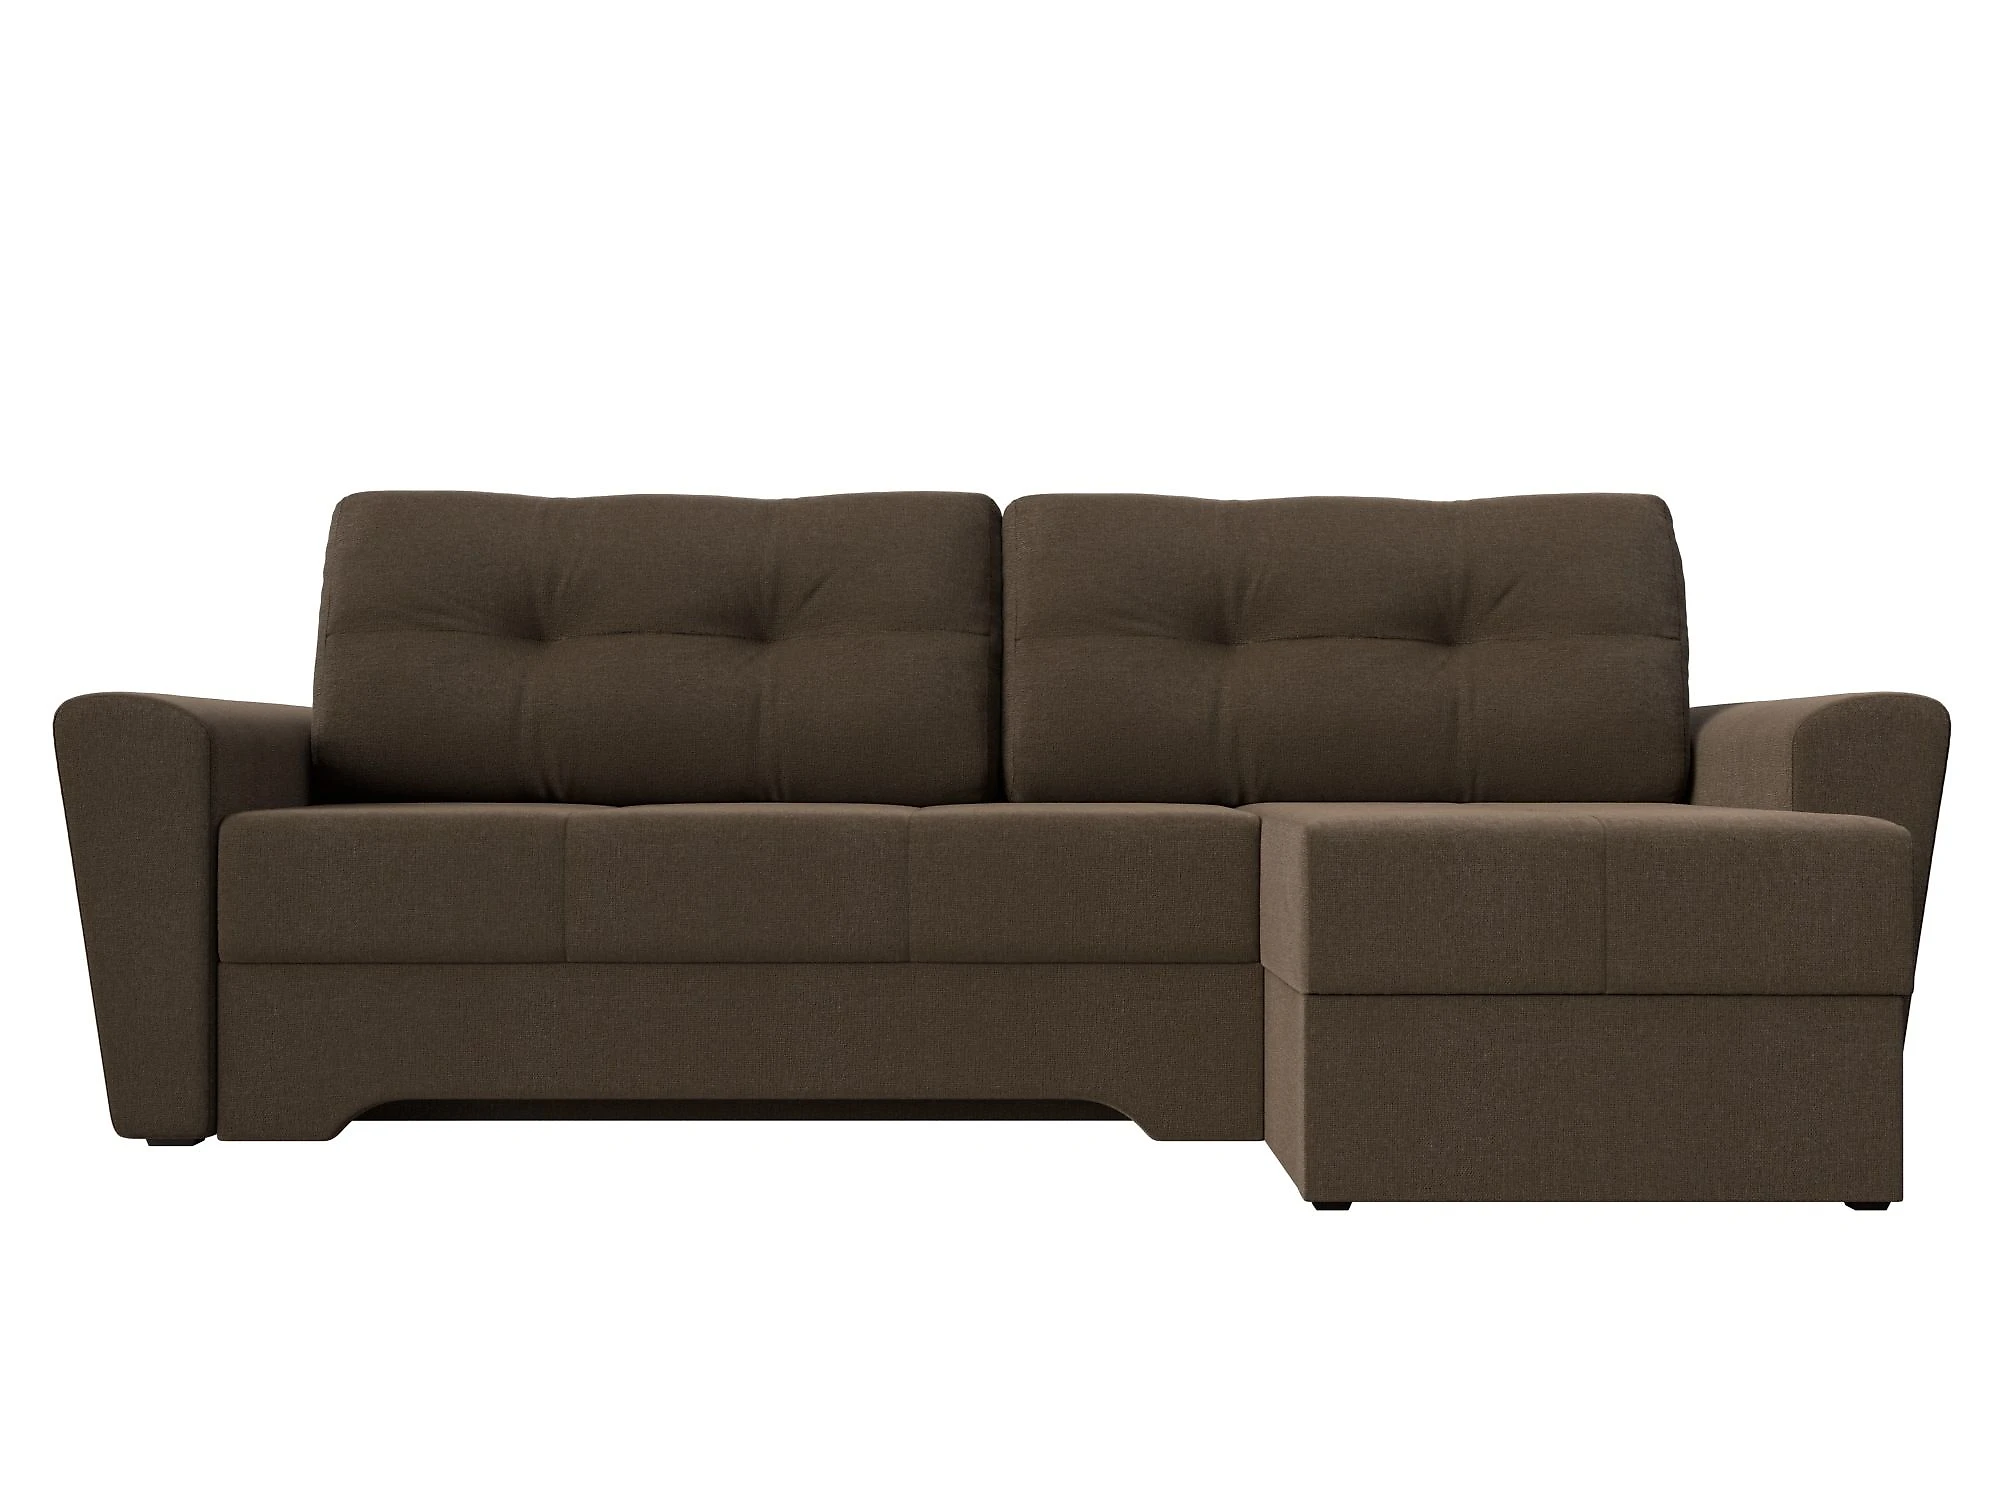  угловой диван из рогожки Амстердам Кантри Дизайн 1